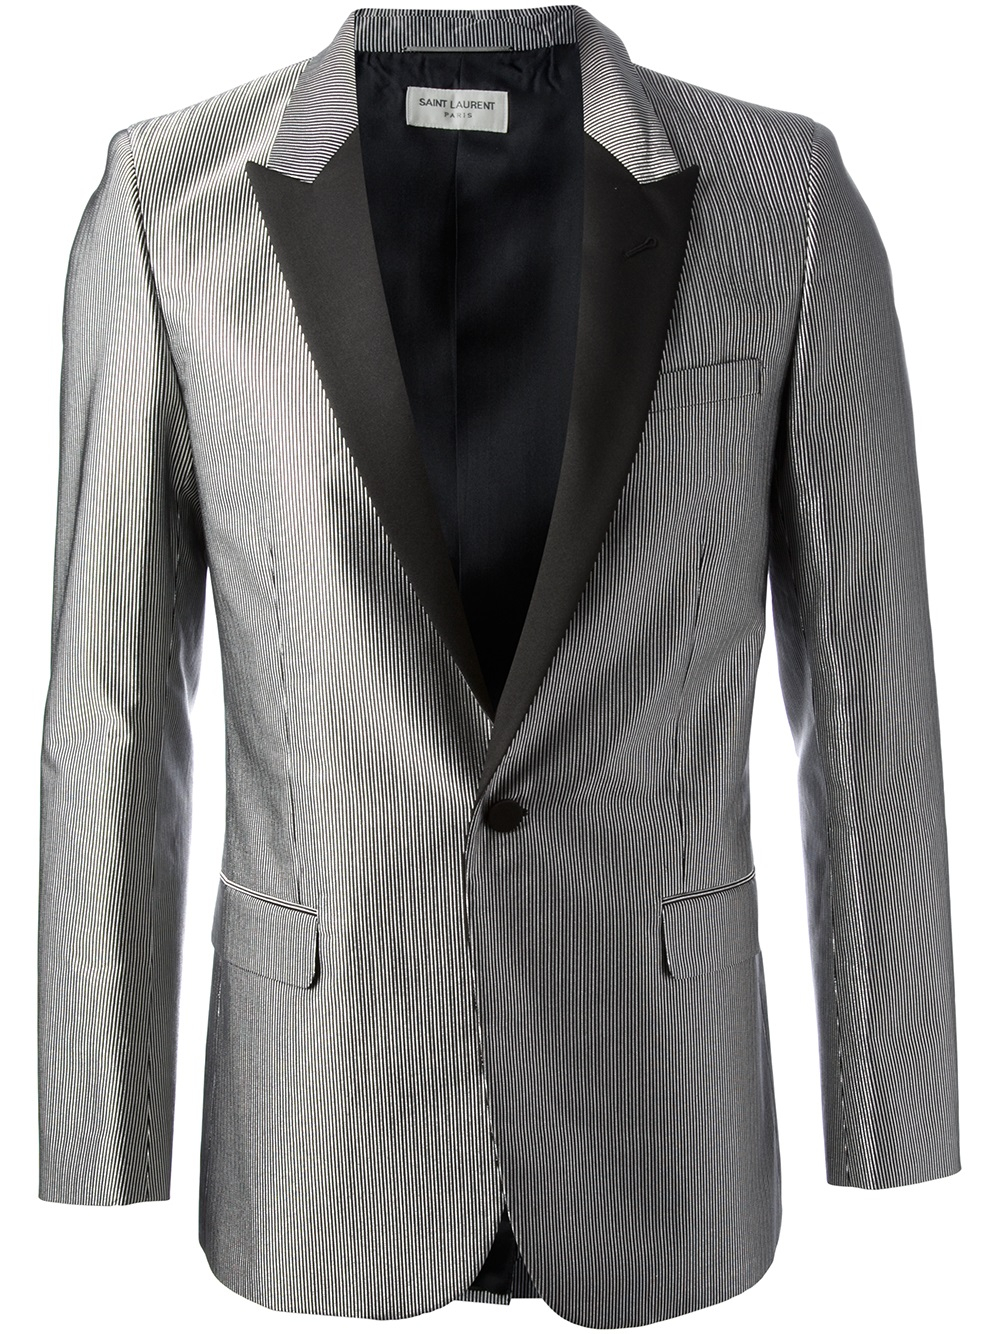 Lyst - Saint Laurent Striped Tuxedo Blazer in Gray for Men